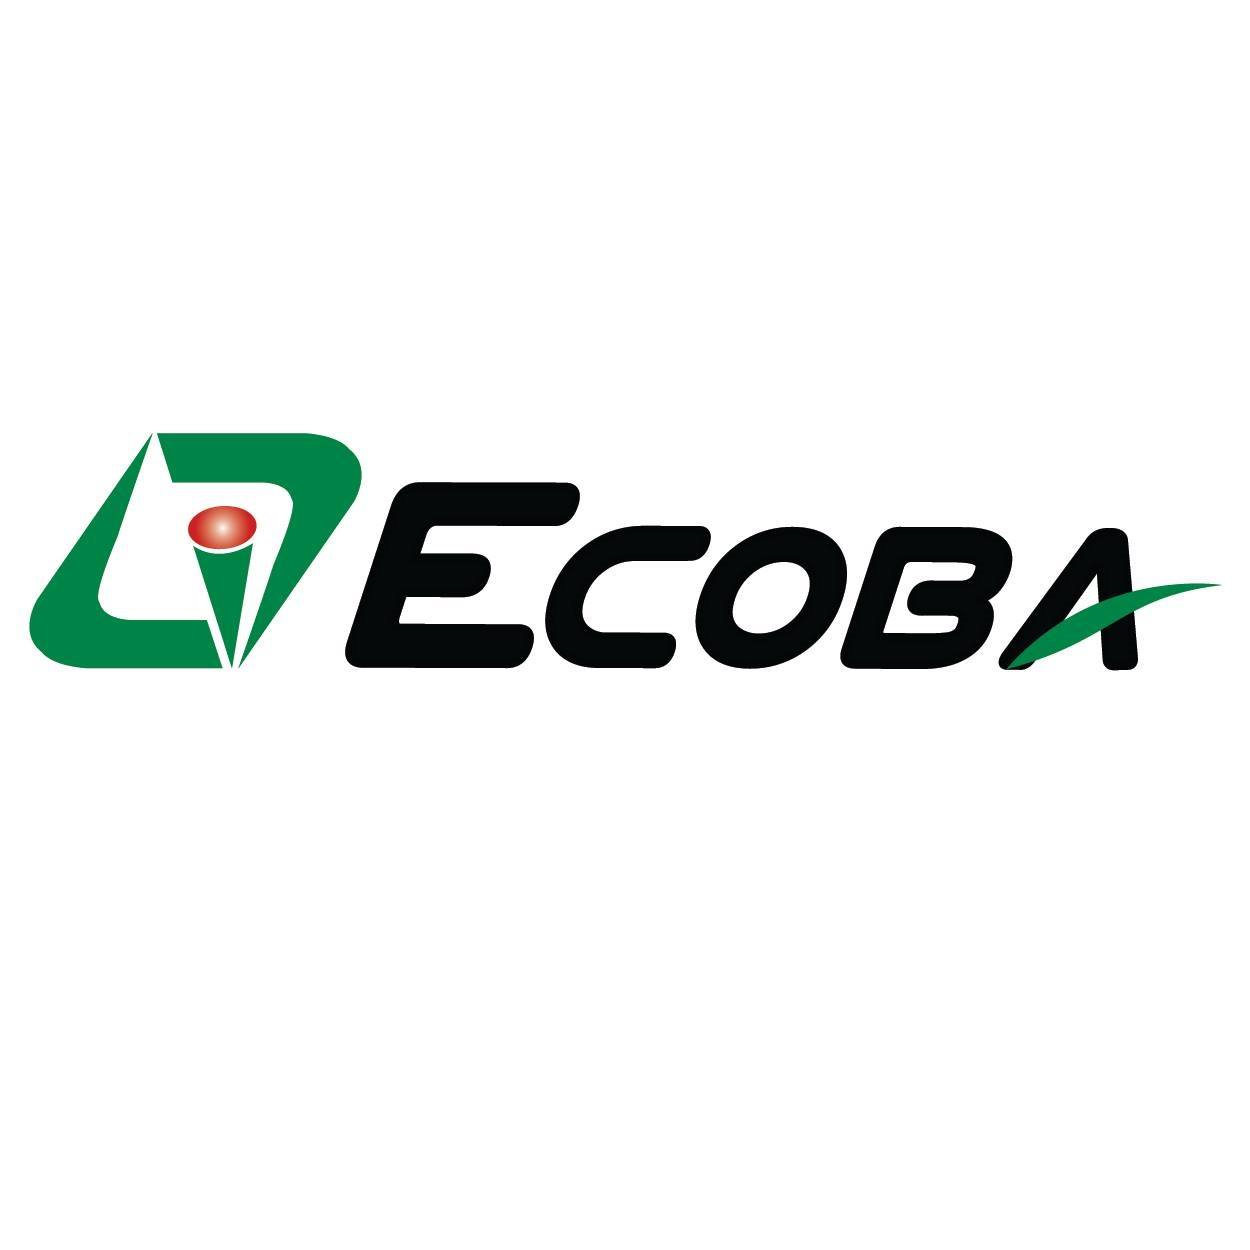 Logo Công ty Cổ phần ECOBA Việt Nam